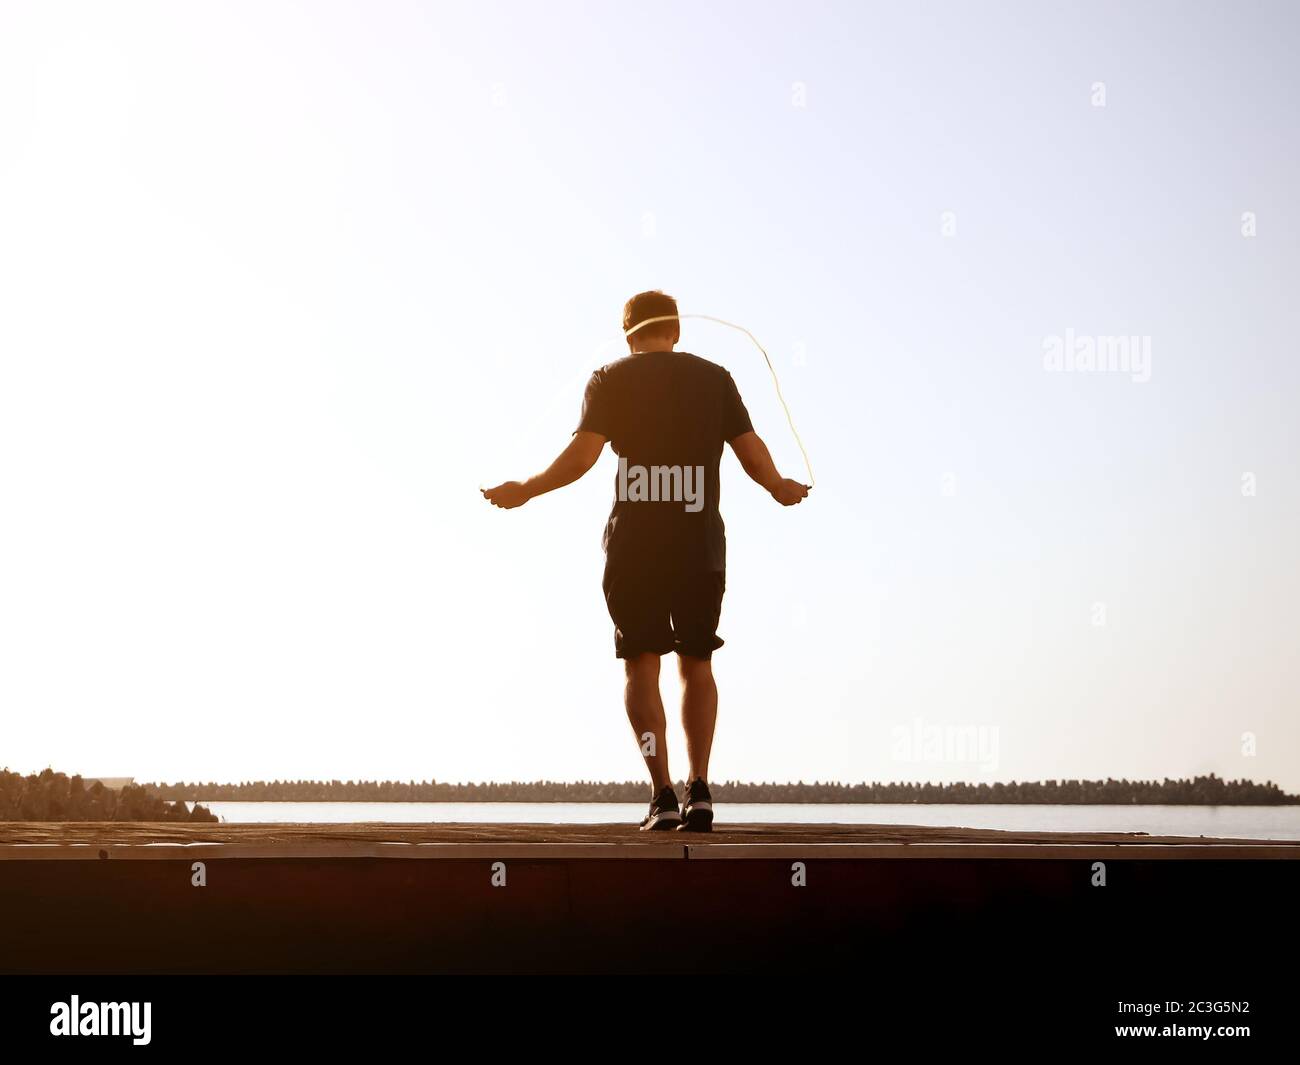 Guy in shorts salta su una corda in una giornata di sole sul cielo retroghido. Effetto artistico. Immagine sfocata Foto Stock